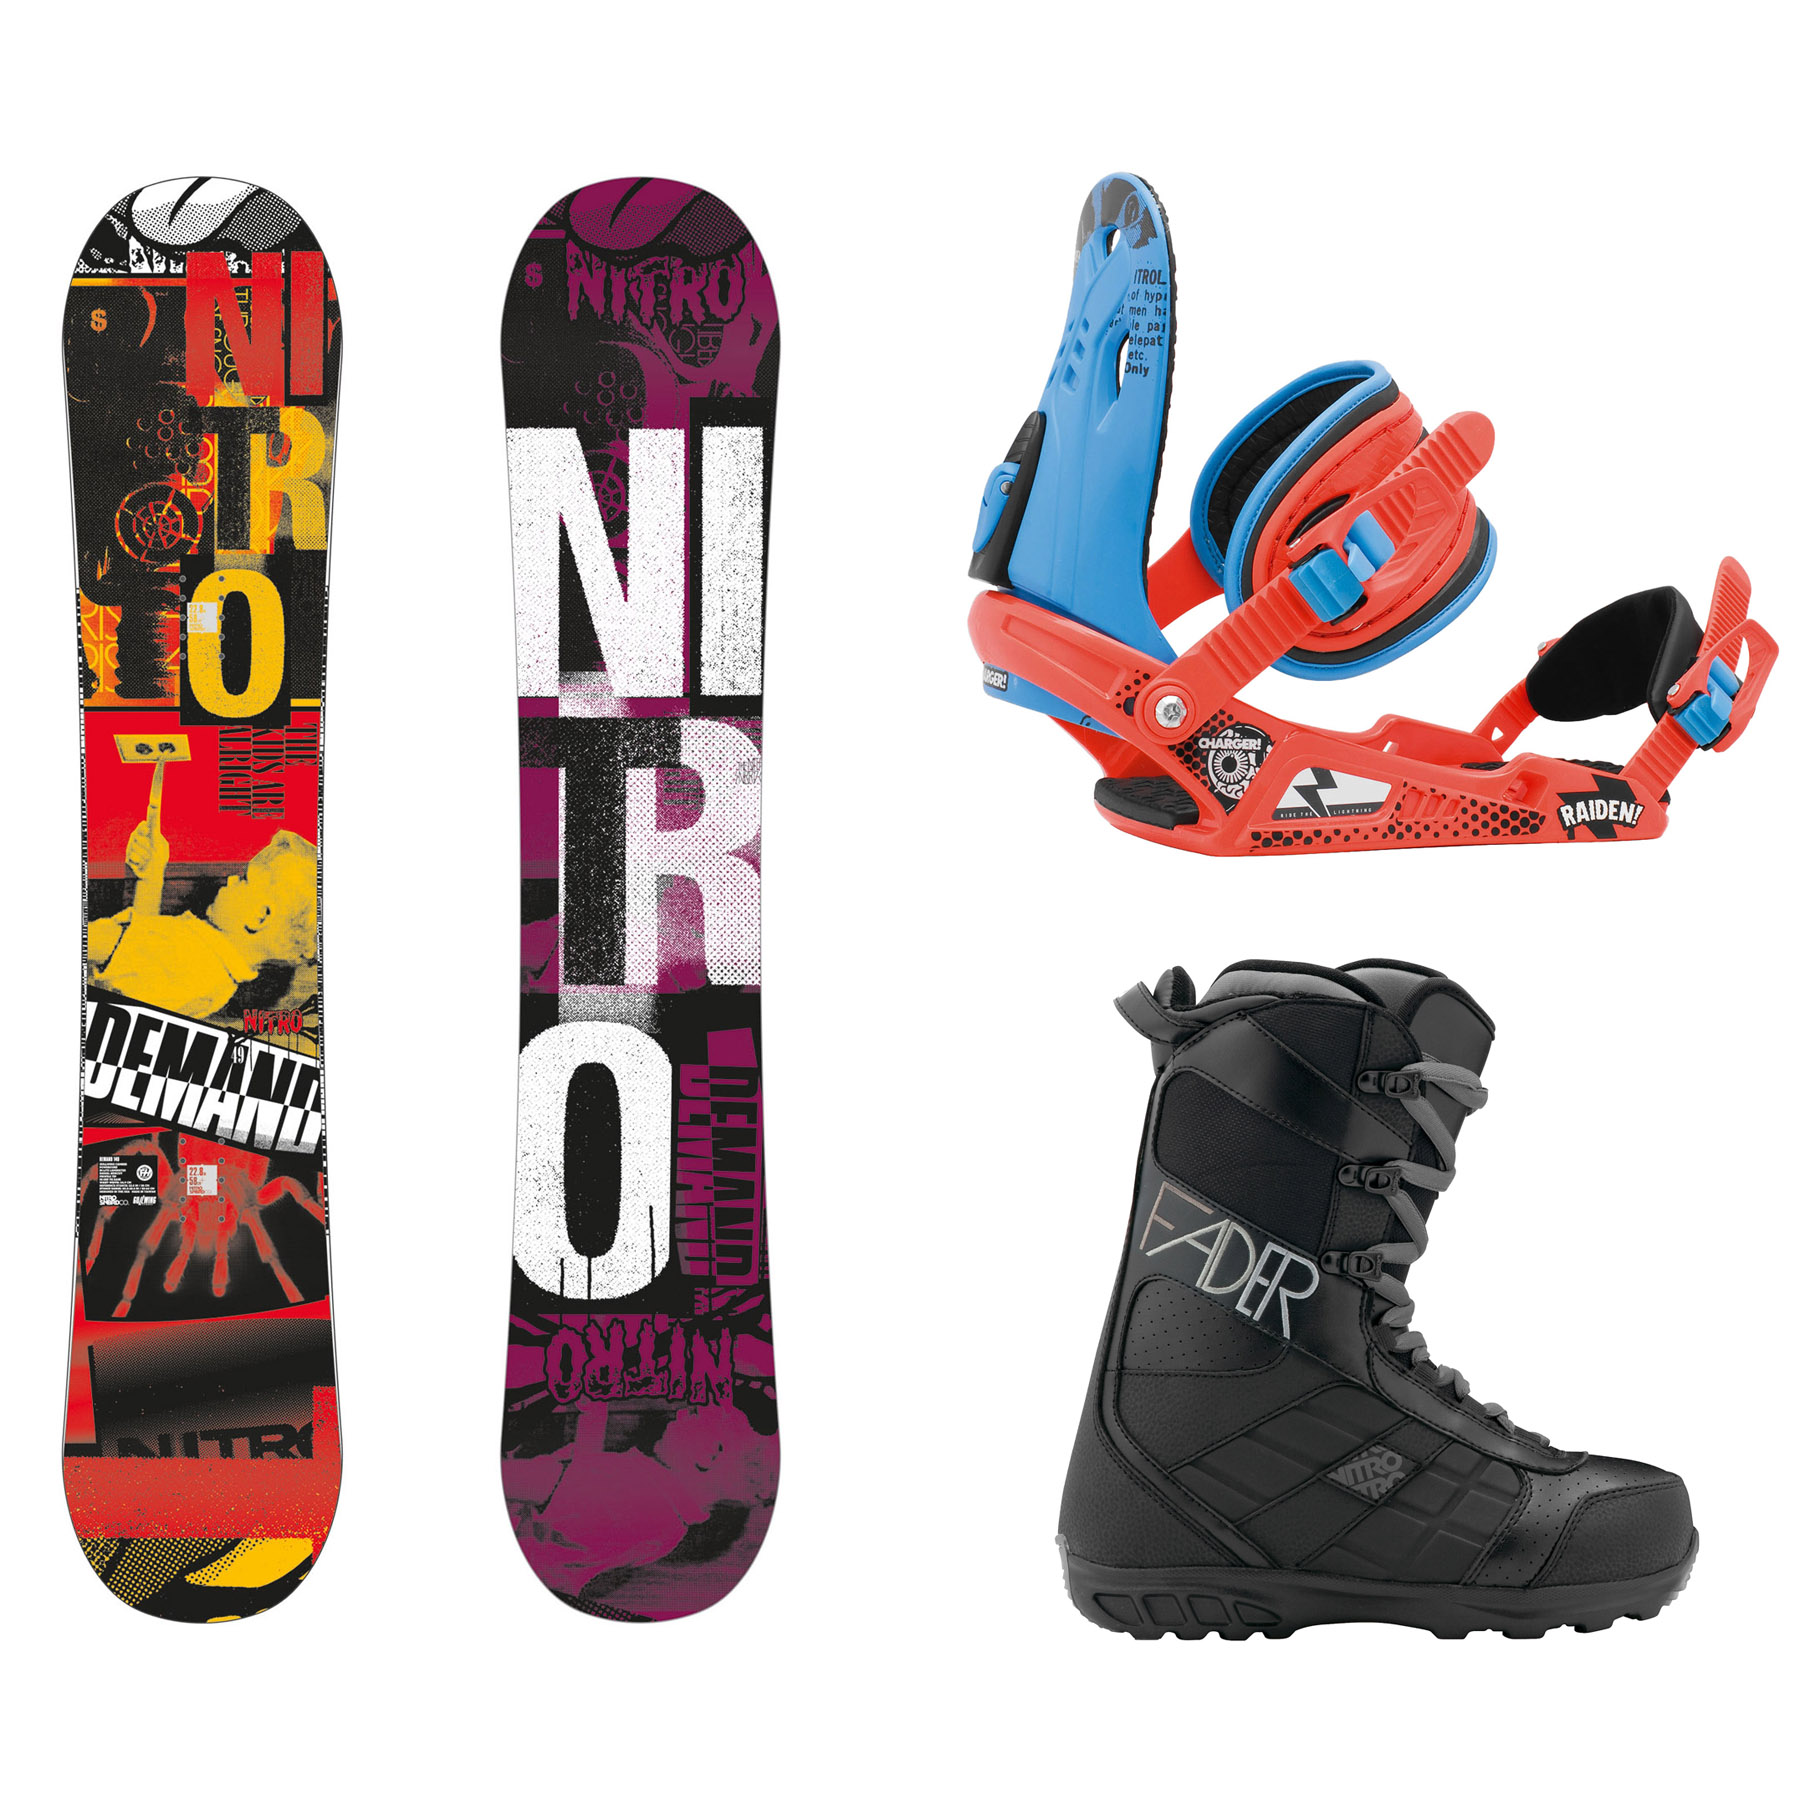 Blootstellen Overtreden lont Boards | Nitro KIT Demand | Snowboard equipment